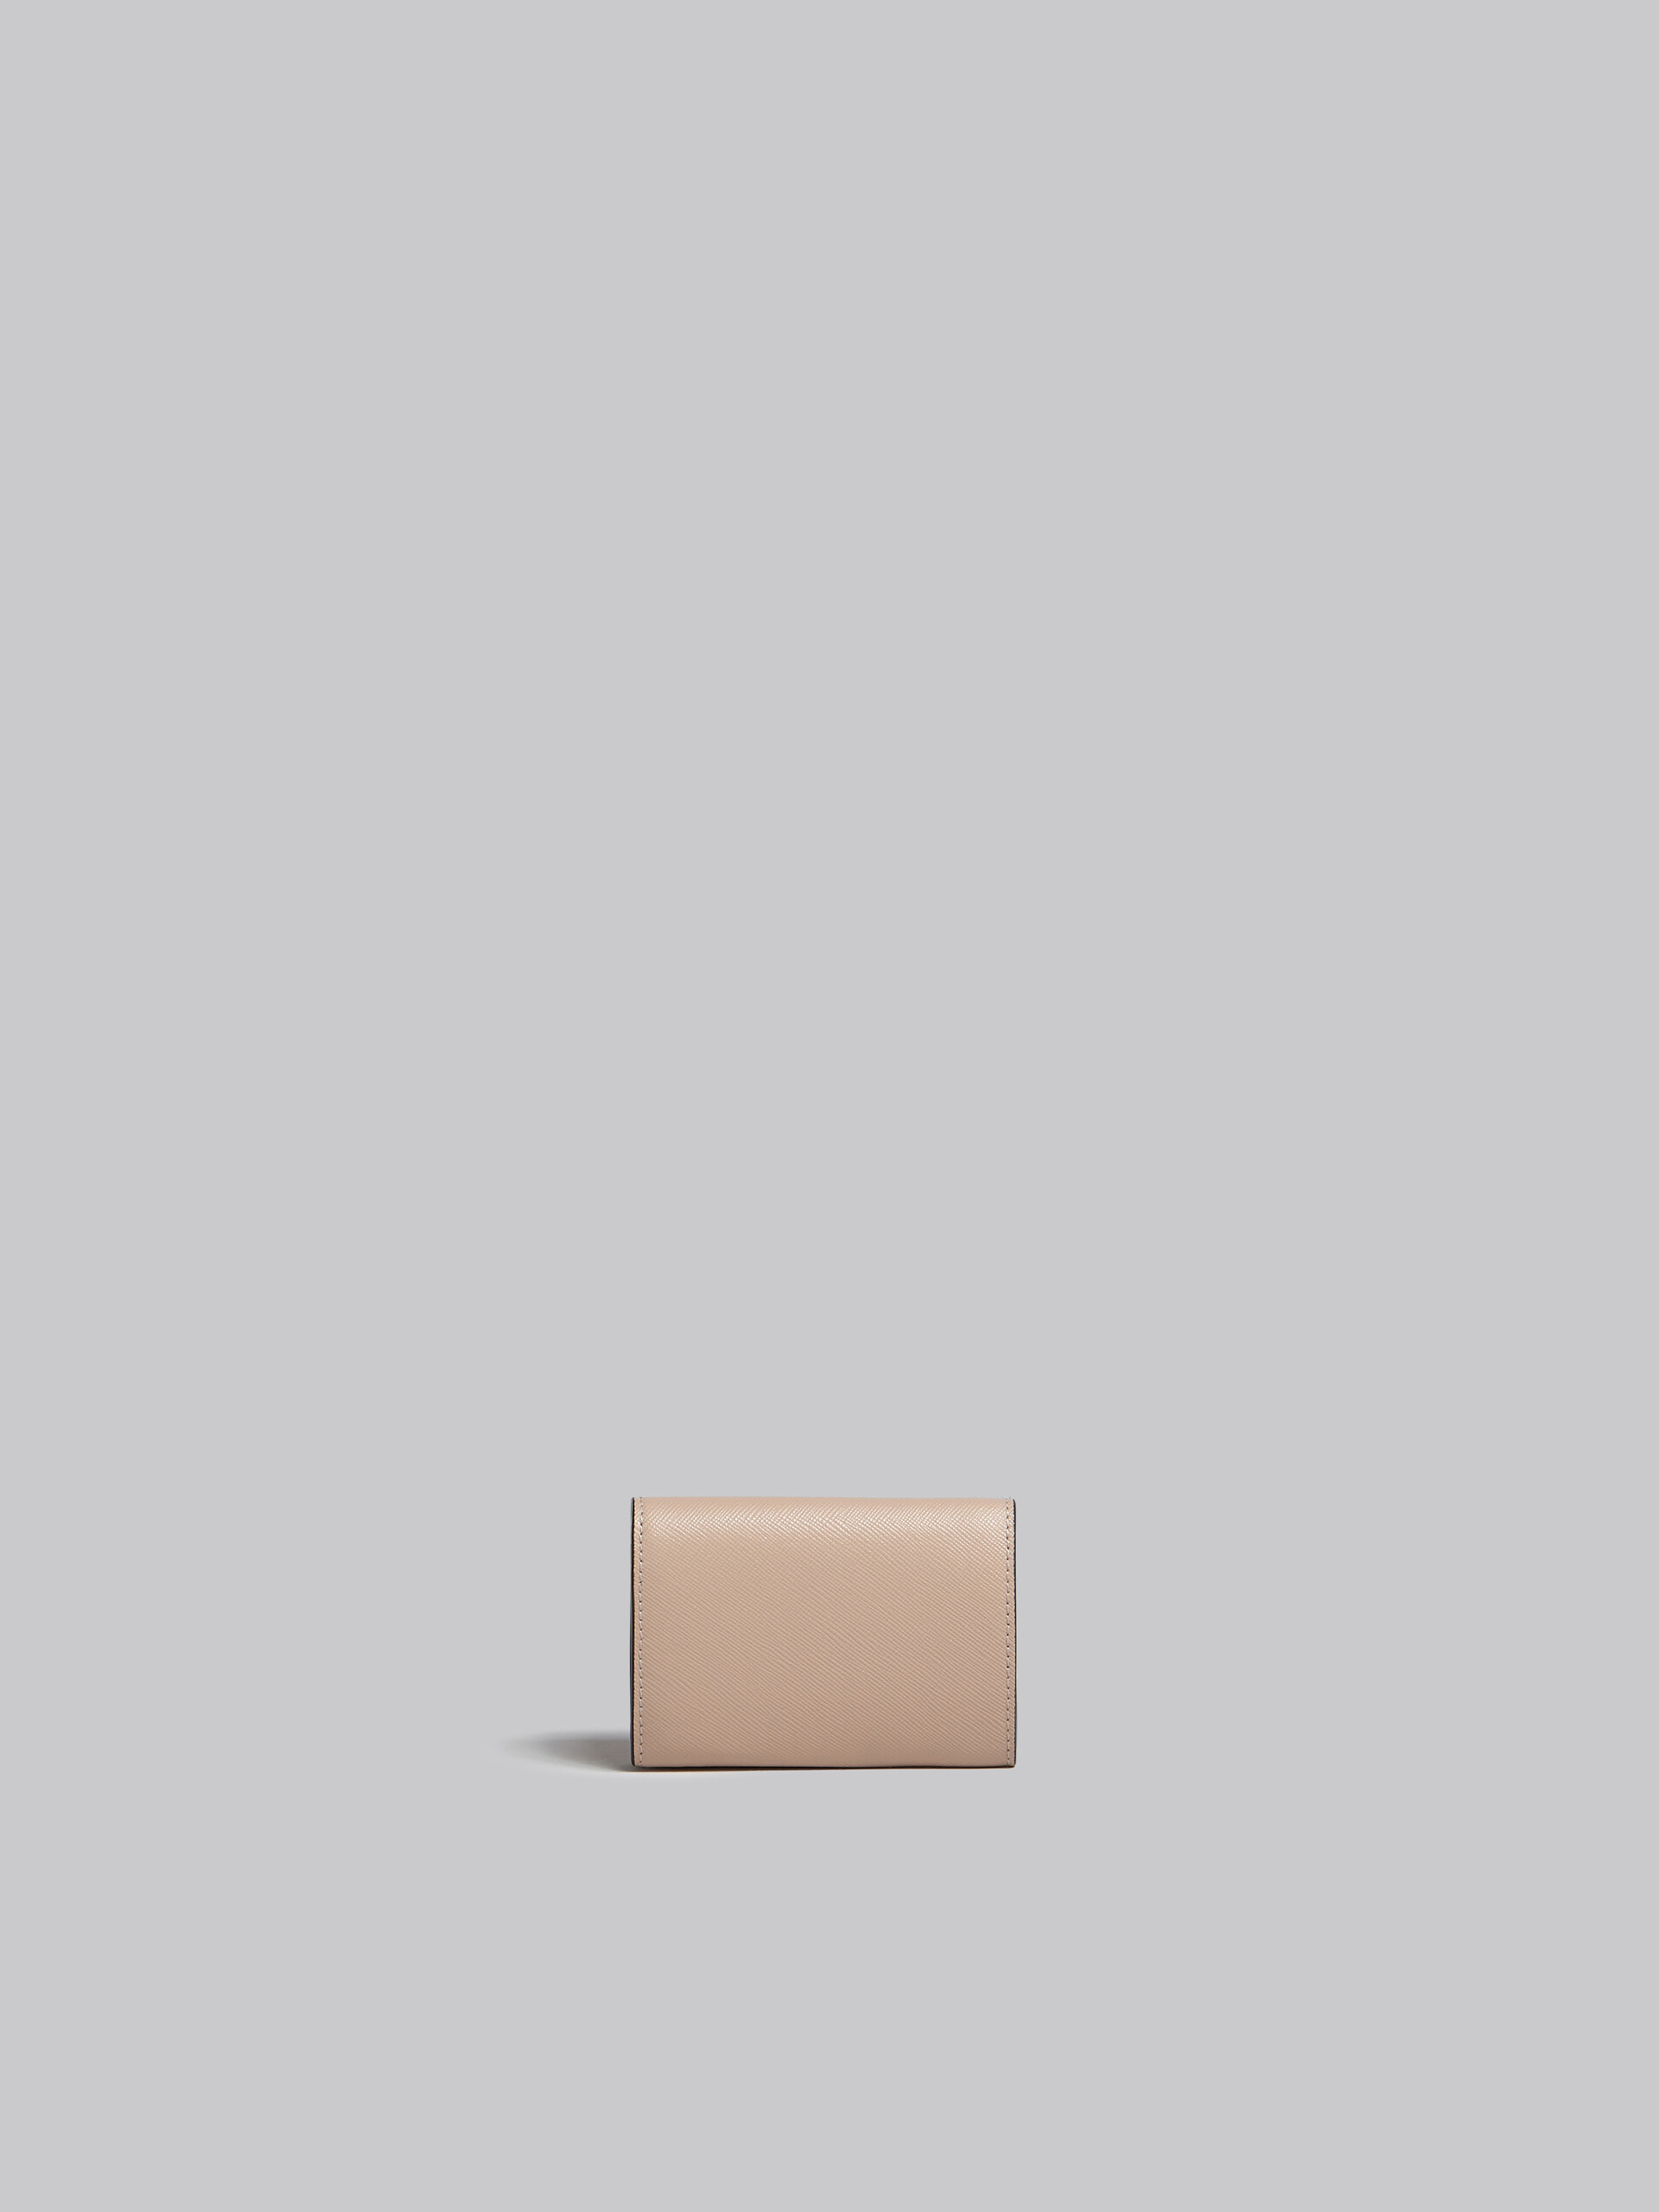 グリーン、ホワイト、ブラウン サフィアーノレザー三つ折りウォレット - 財布 - Image 3